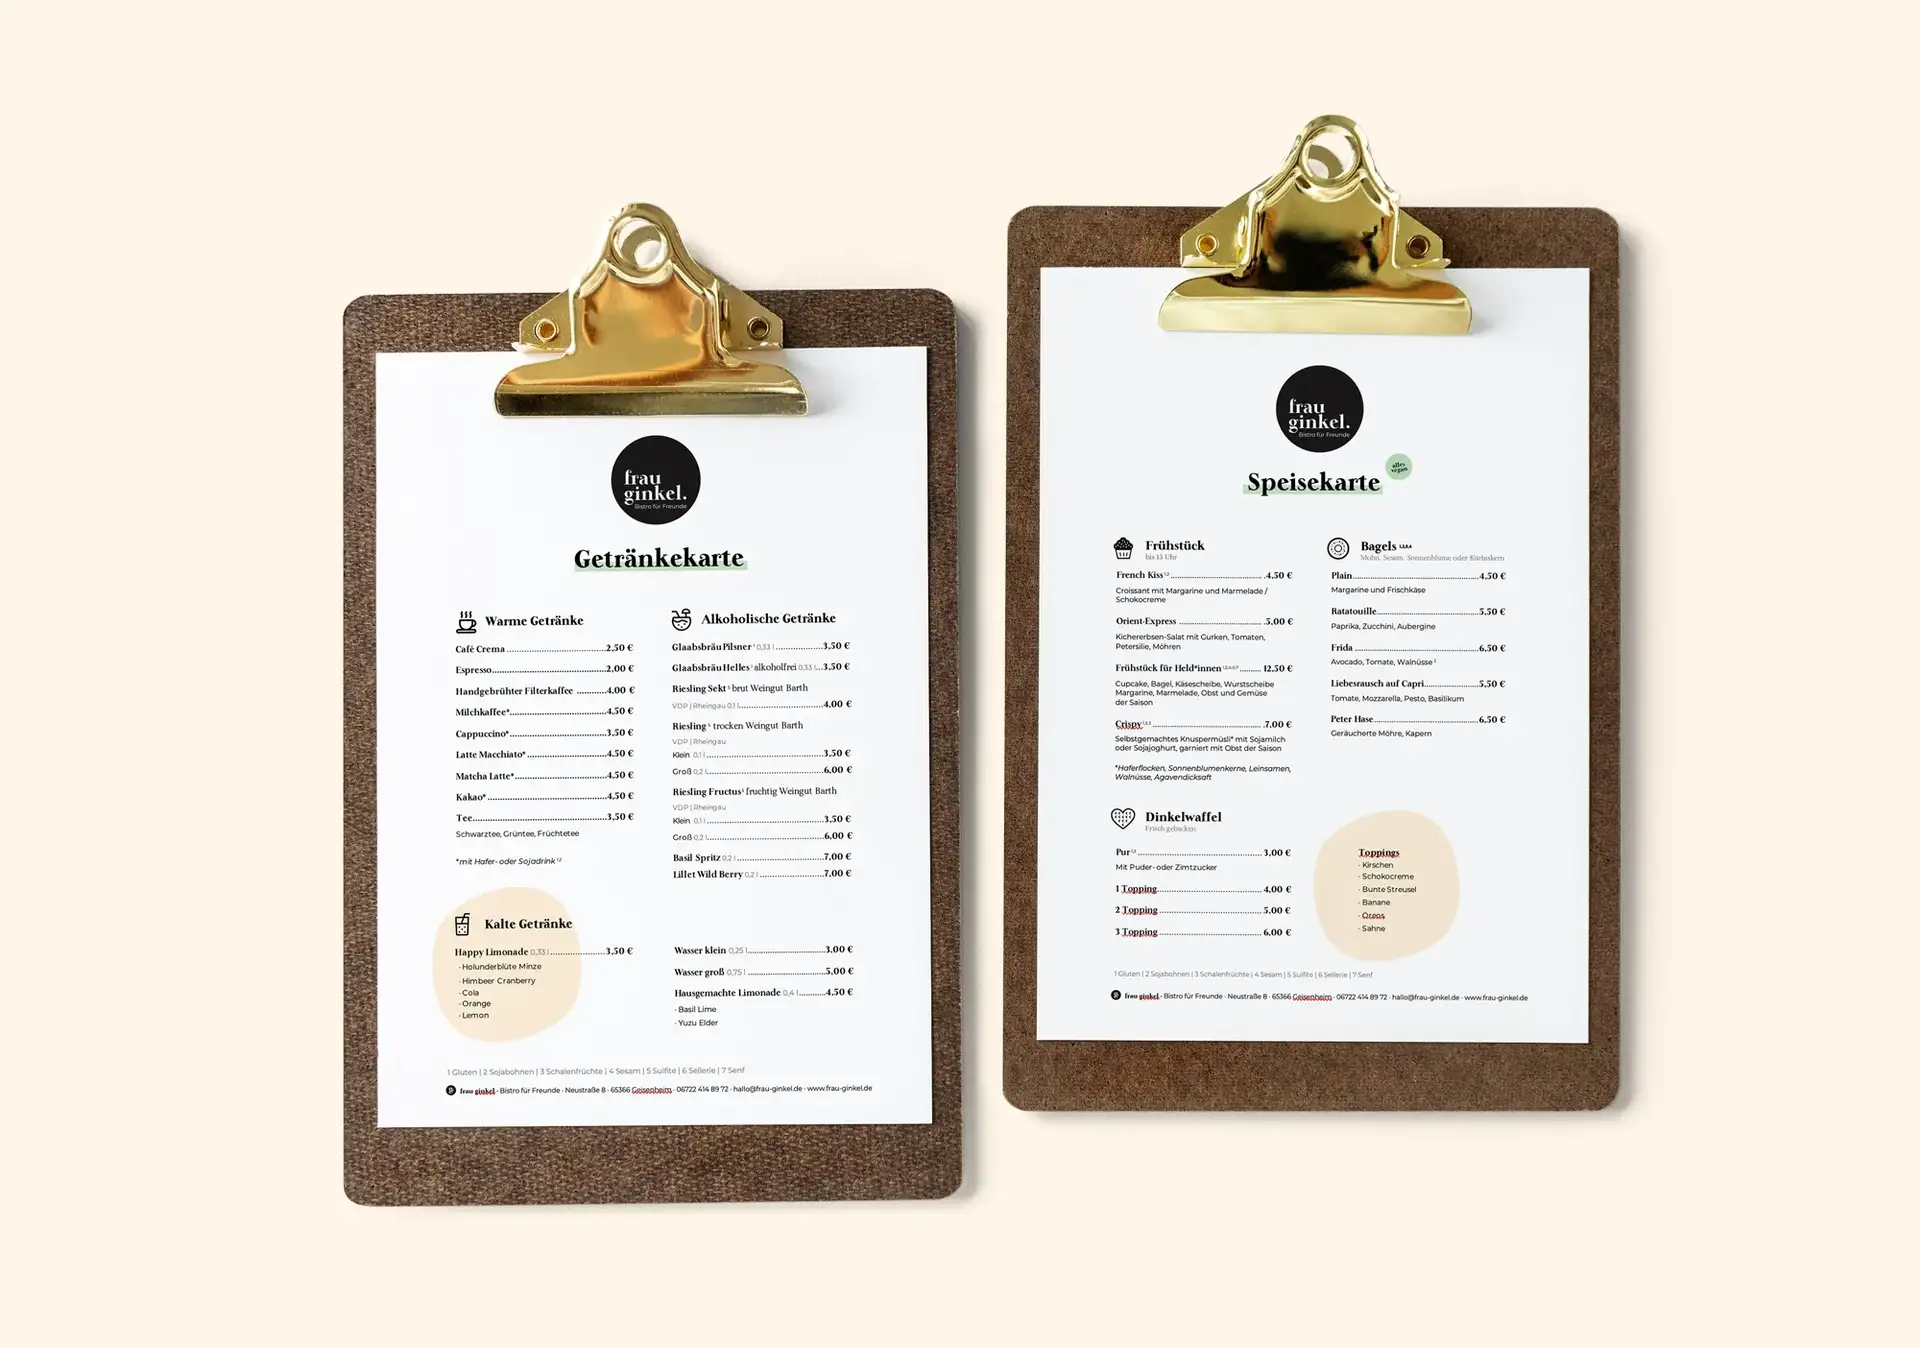 Abbildung von zwei Speisekarten, die in einem einheitlichen Corporate Design gestaltet sind